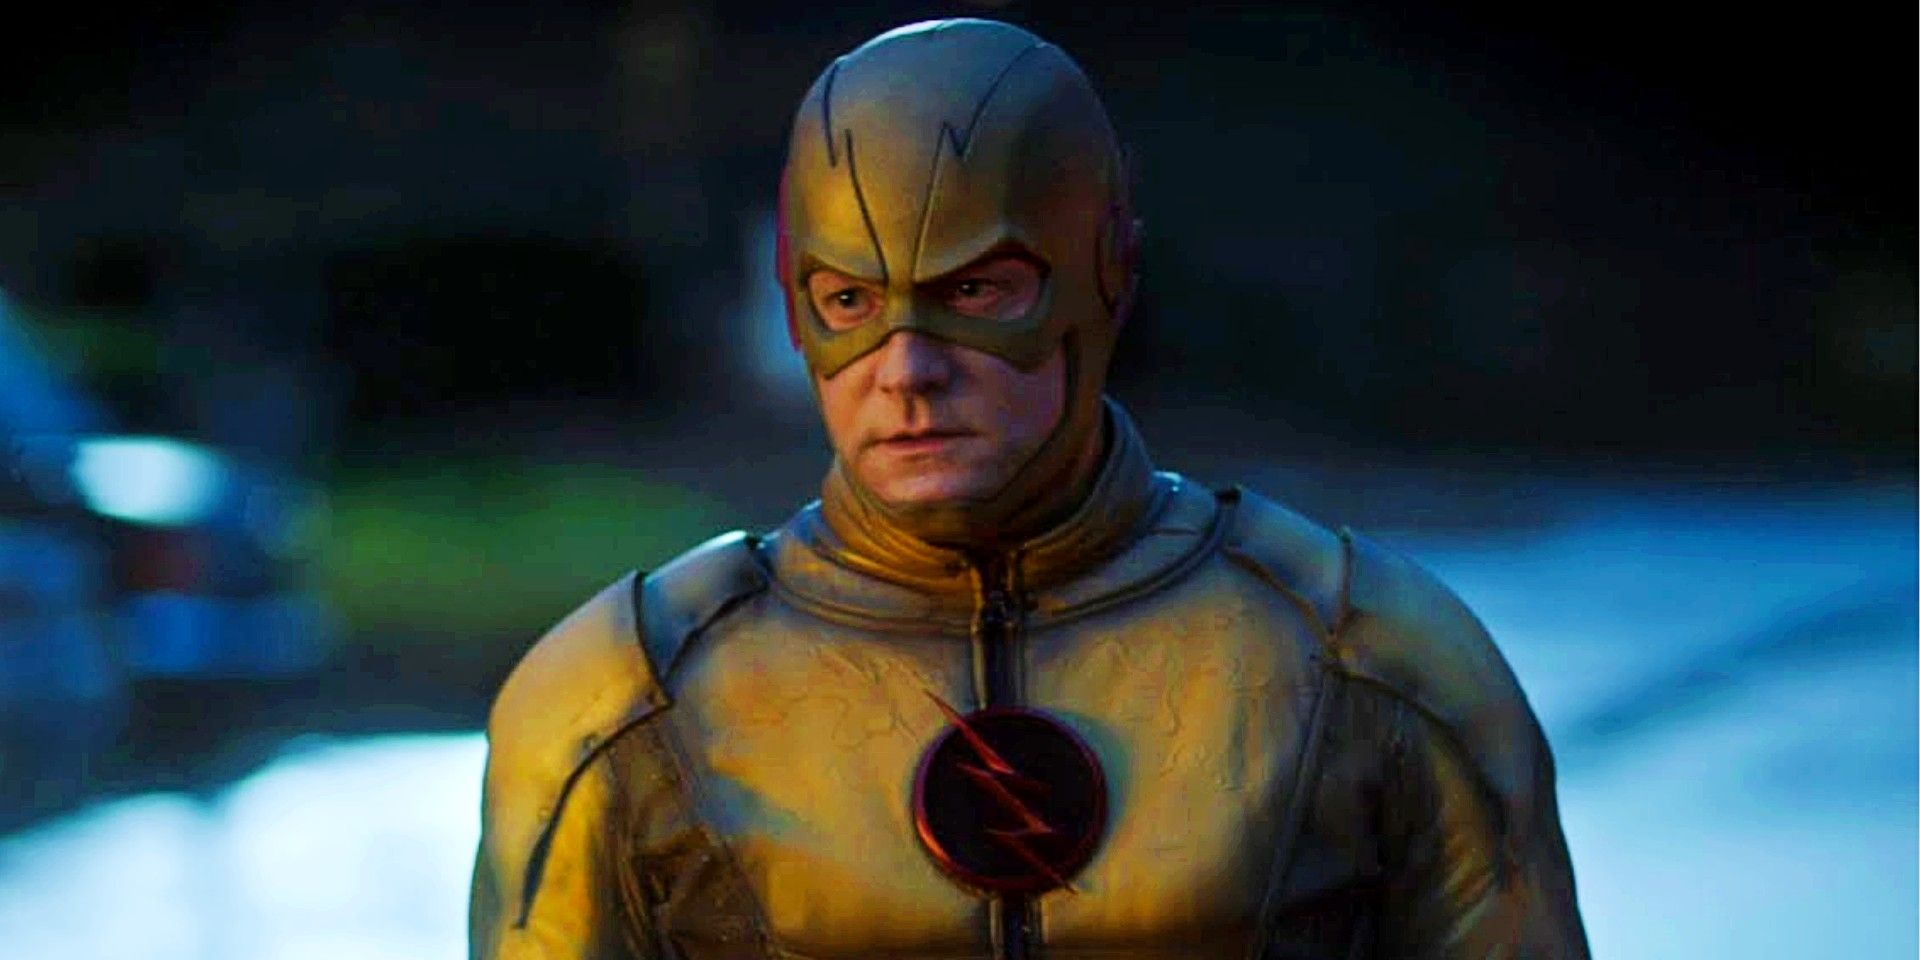 Matt Letscher as Reverse Flash in The Flash Show